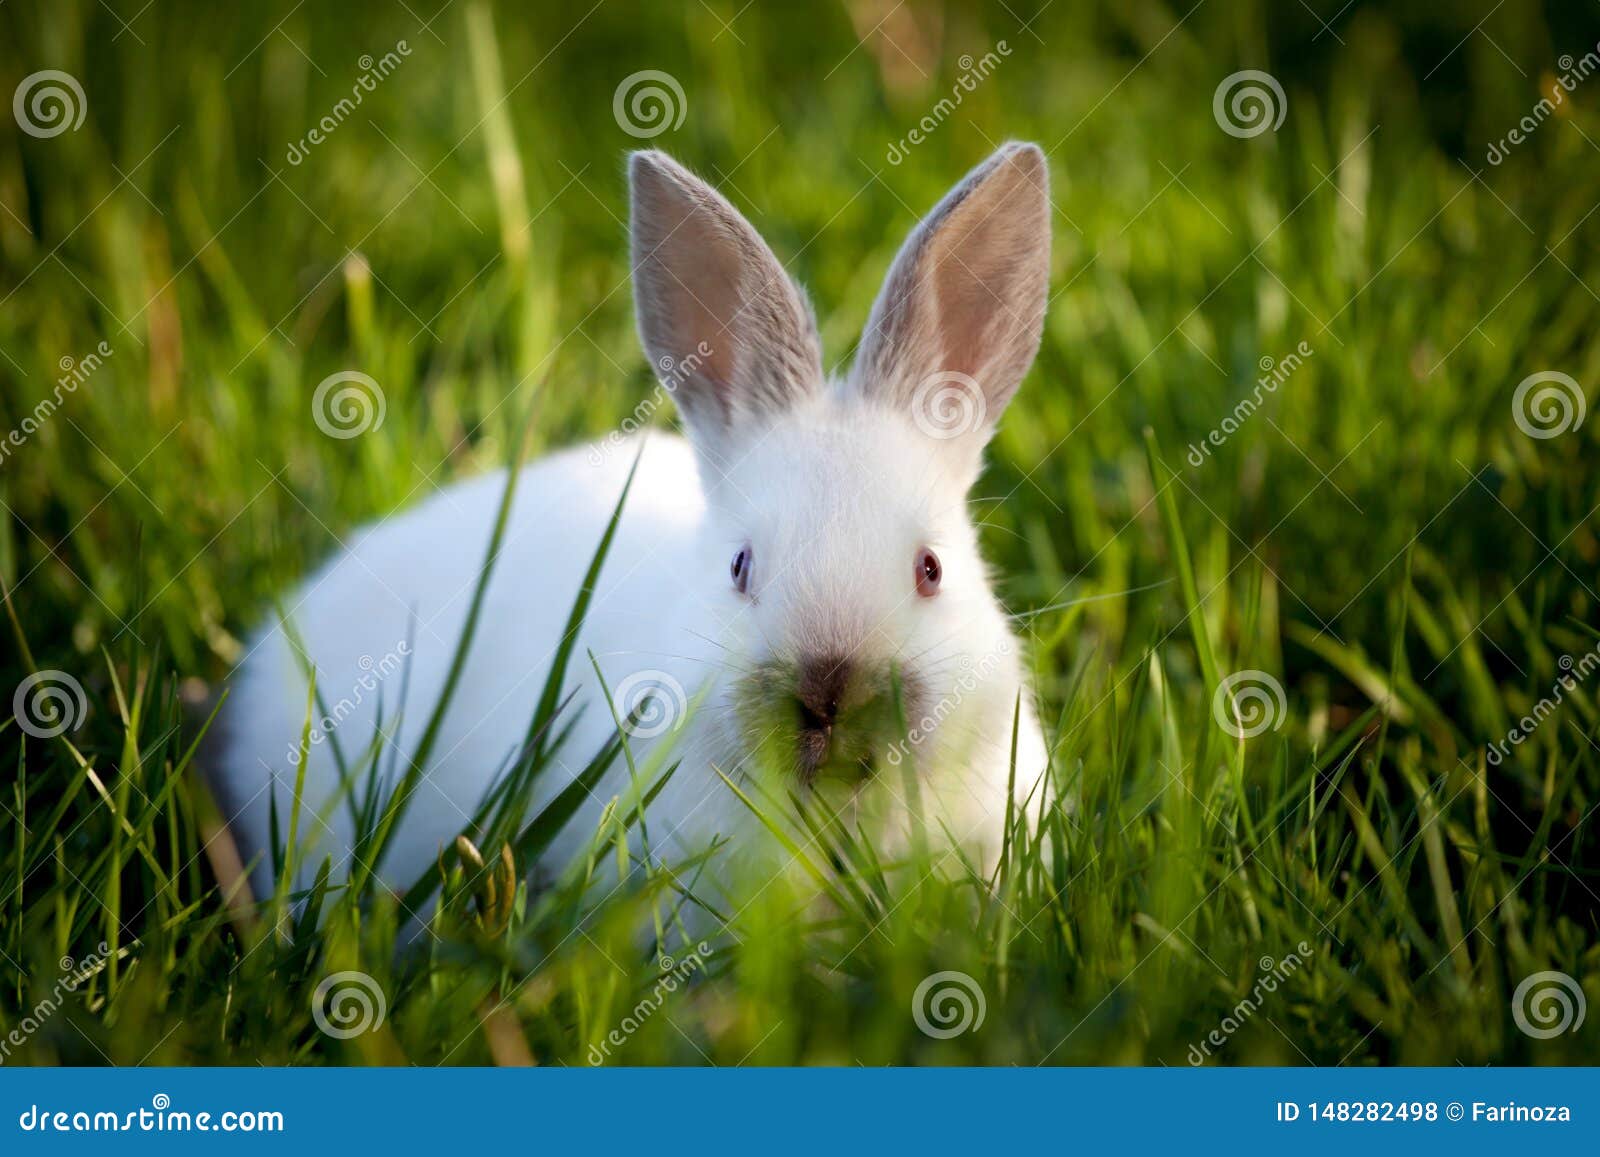 在绿草的灰色兔子 库存照片. 图片 包括有 农场, 友好, 敌意, 庭院, 草甸, 逗人喜爱, 哺乳动物 - 46202654